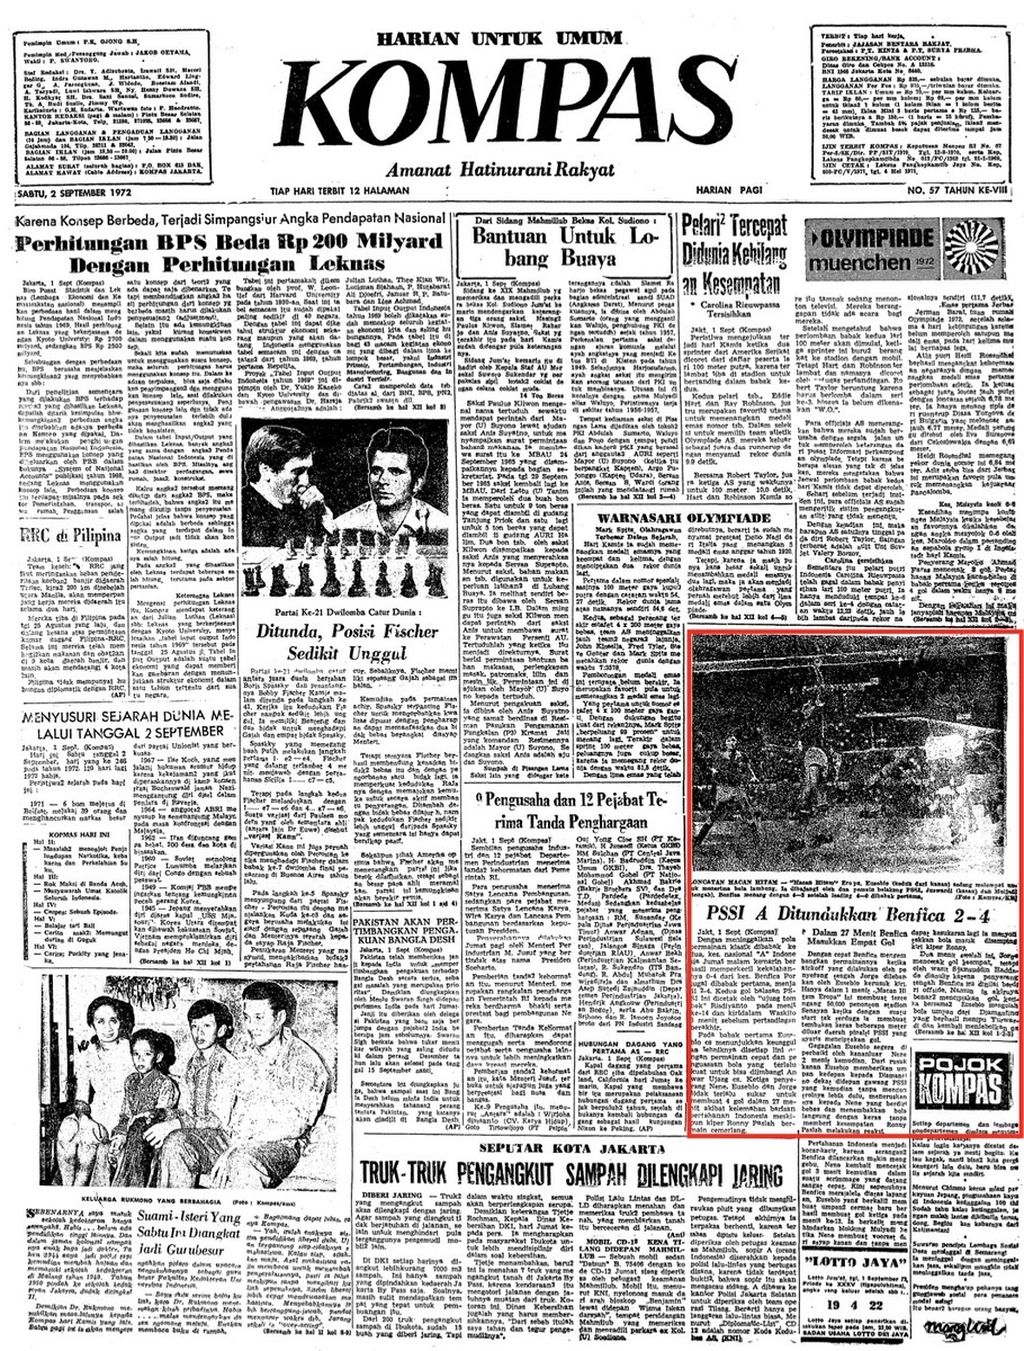 Berita di halaman utama "Kompas" edisi, Sabtu, 2 September 1972, tentang hasil duel tim PSSI menghadapi Benfica, 1 September 1972, di Stadion Utama Senayan, Jakarta.